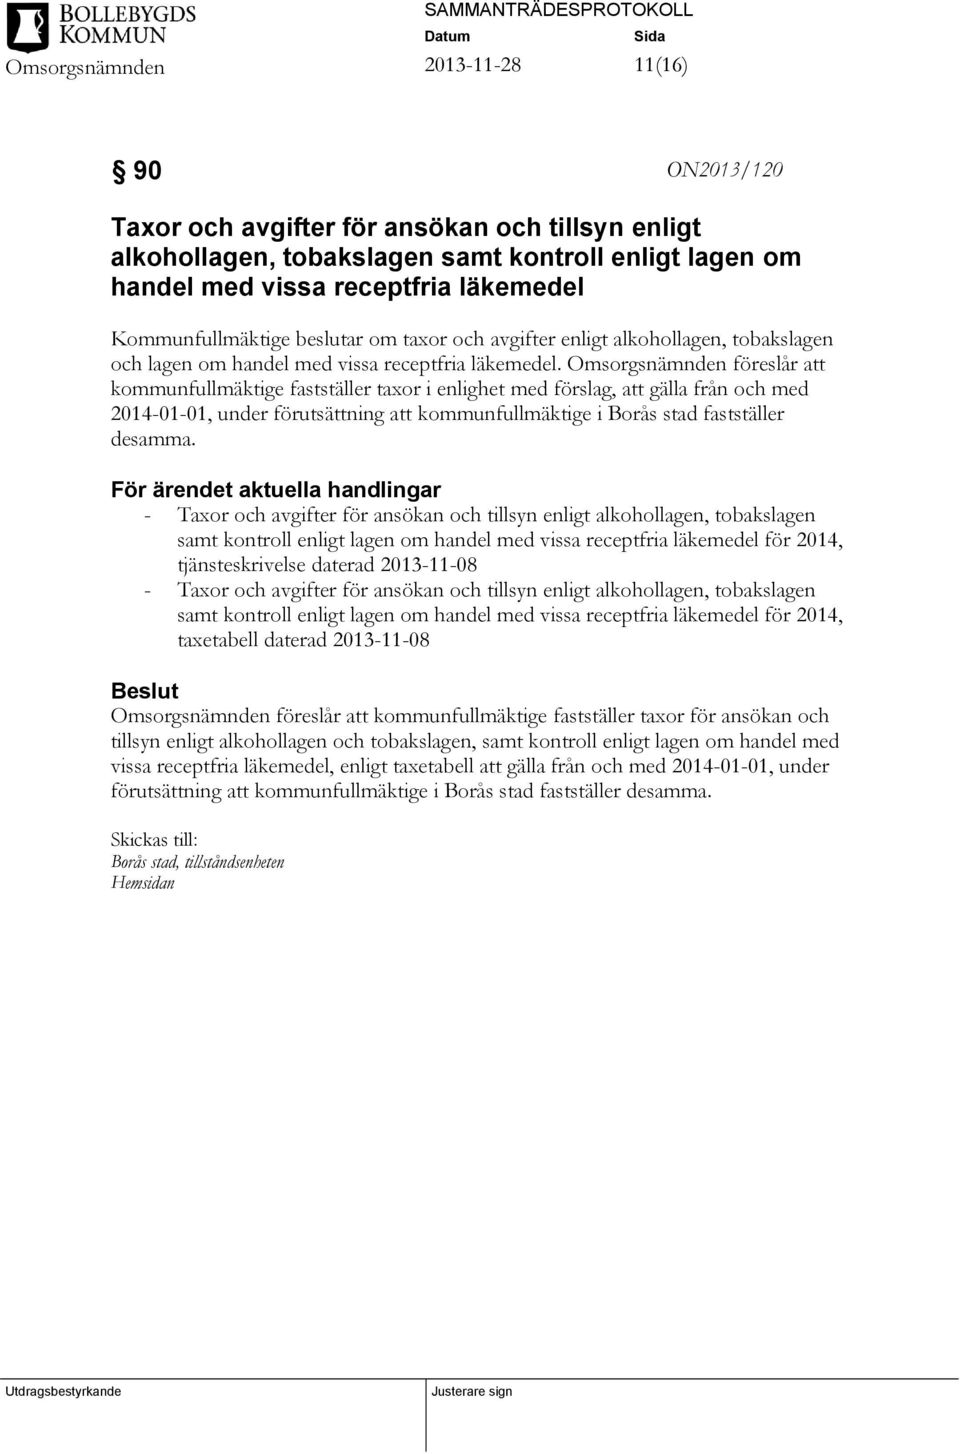 Omsorgsnämnden föreslår att kommunfullmäktige fastställer taxor i enlighet med förslag, att gälla från och med 2014-01-01, under förutsättning att kommunfullmäktige i Borås stad fastställer desamma.